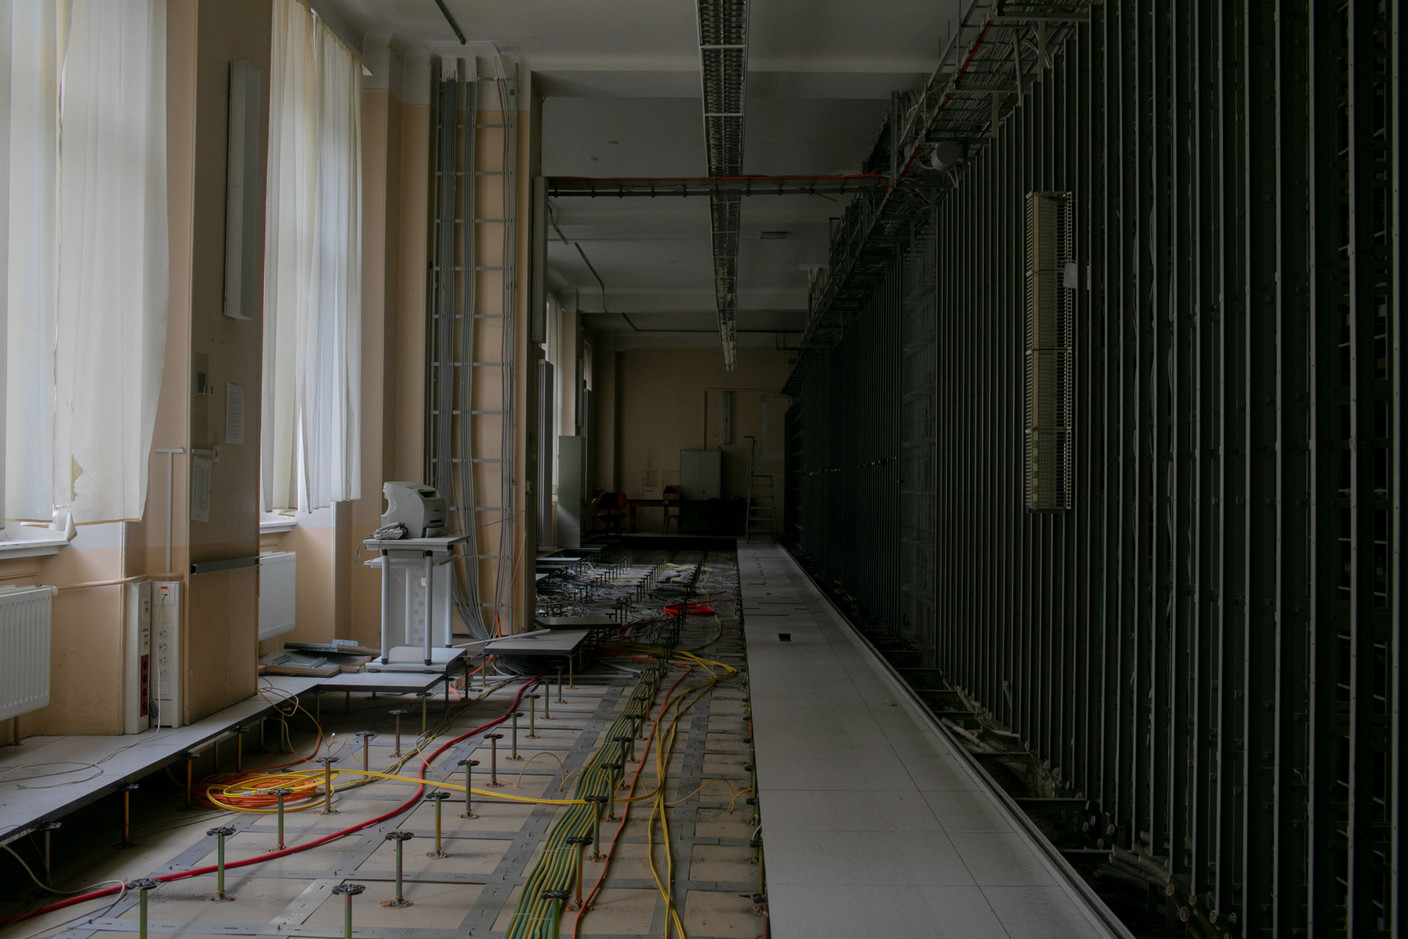 Vue de l’intérieur de l’Hôtel des Postes à Aldringen en juillet 2020. (Photo: Matic Zorman)